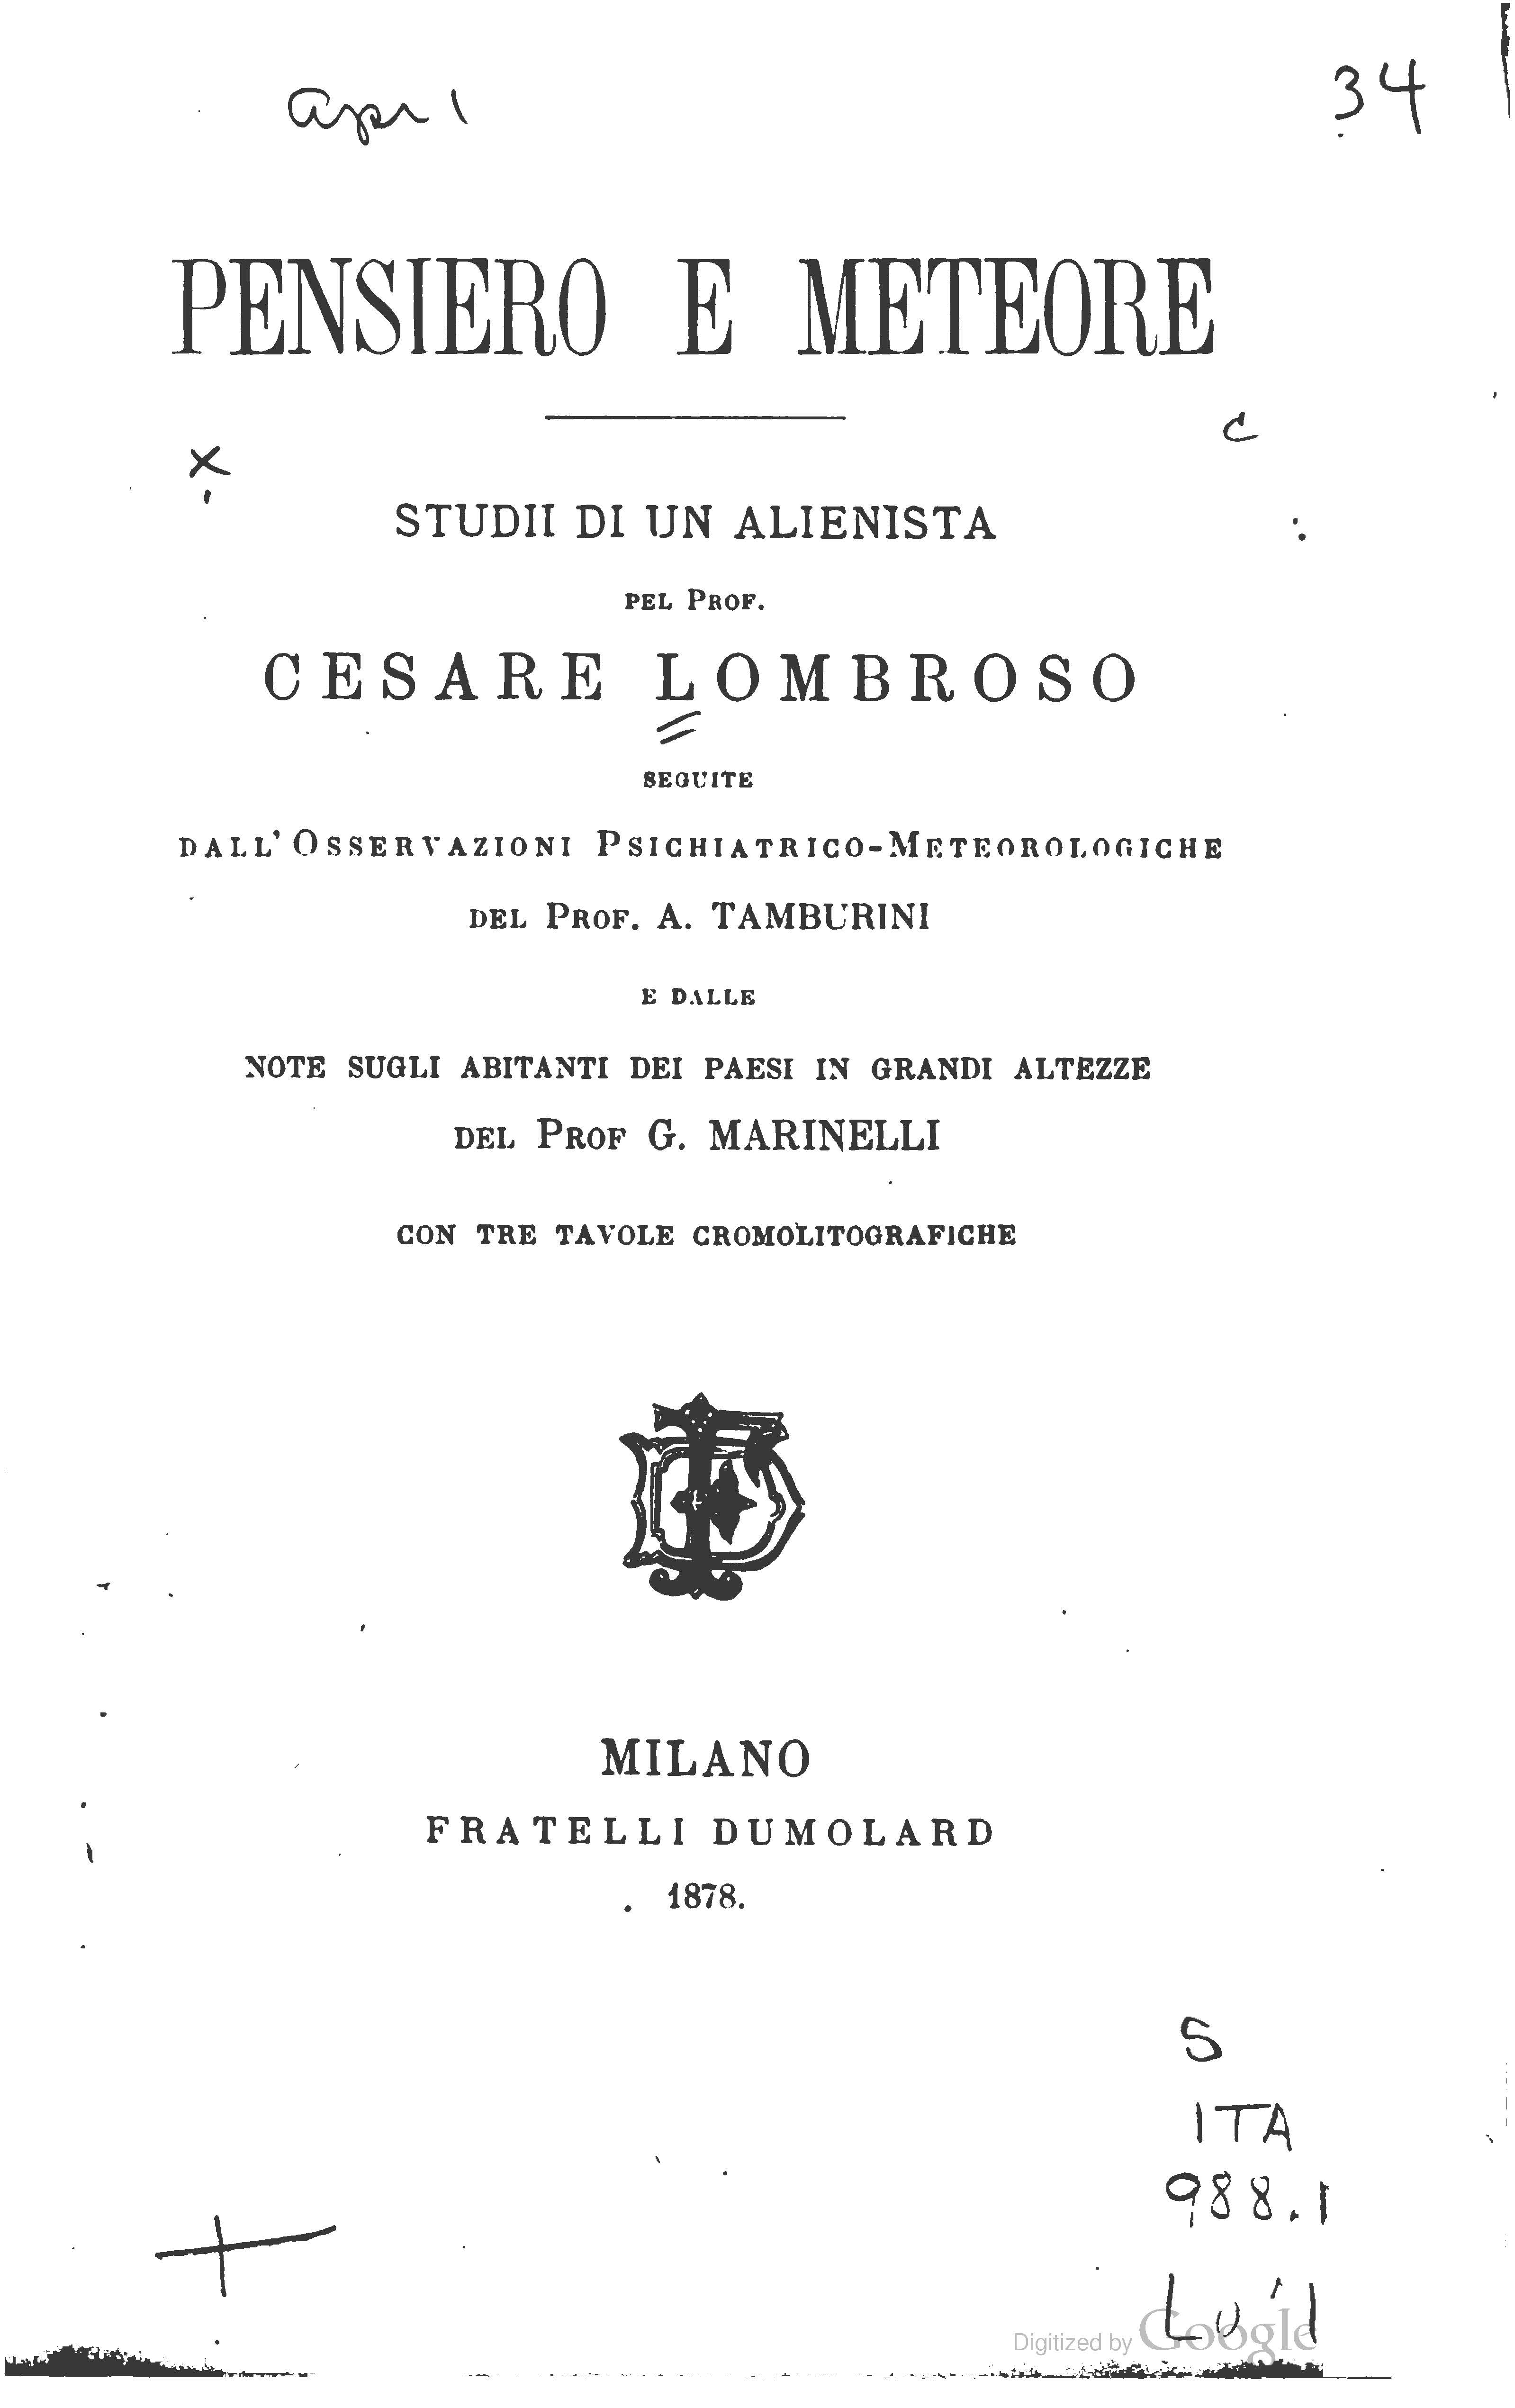 Cesare Lombroso, Pensiero e meteore